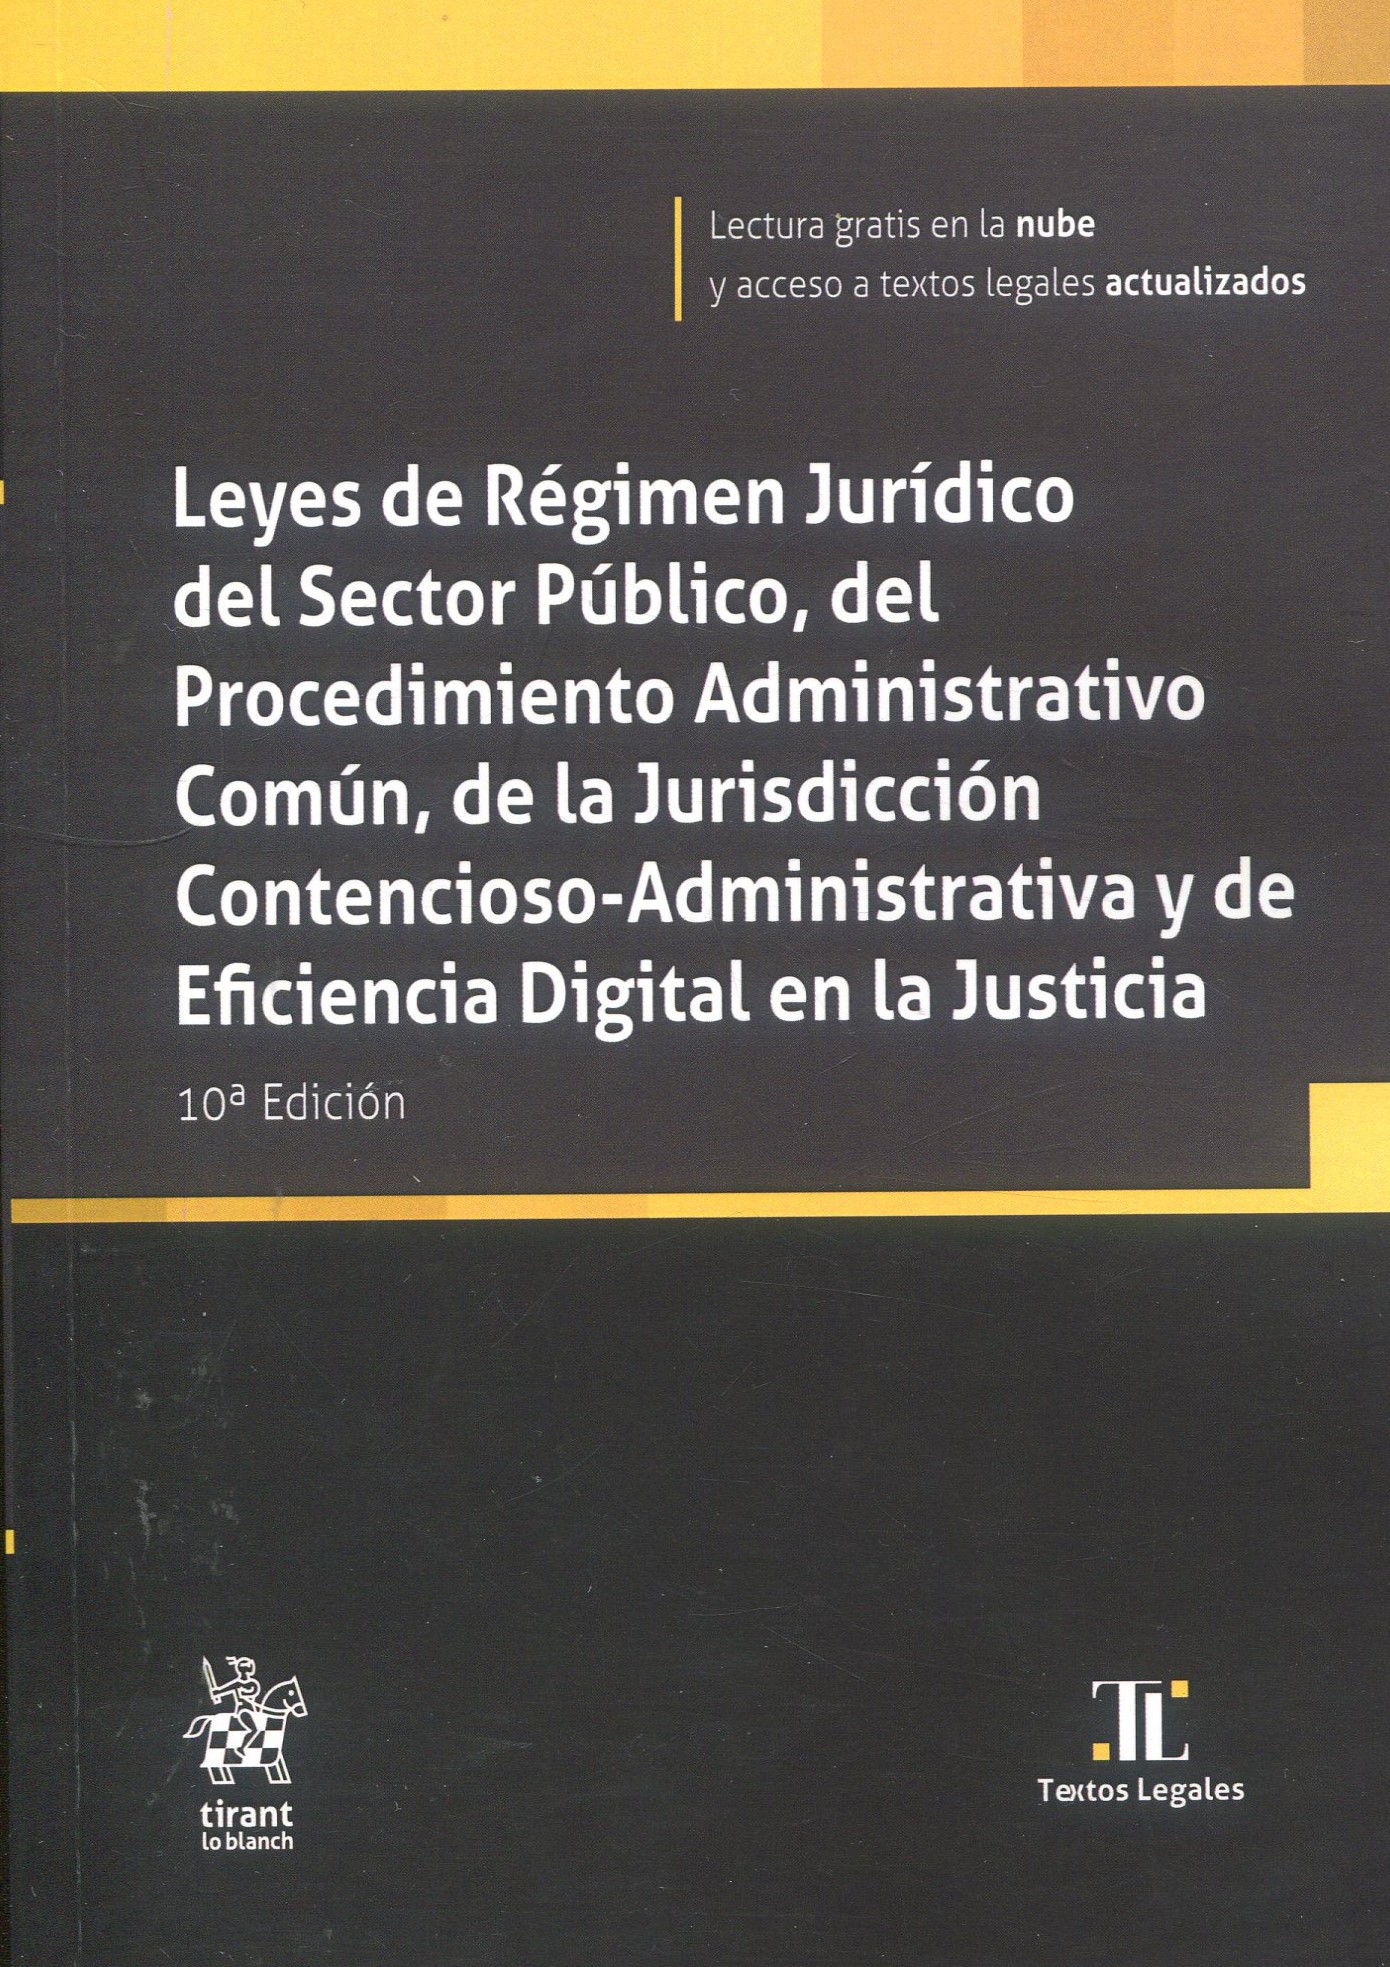 Leyes de Régimen Jurídico del Sector Público / 9788410568242